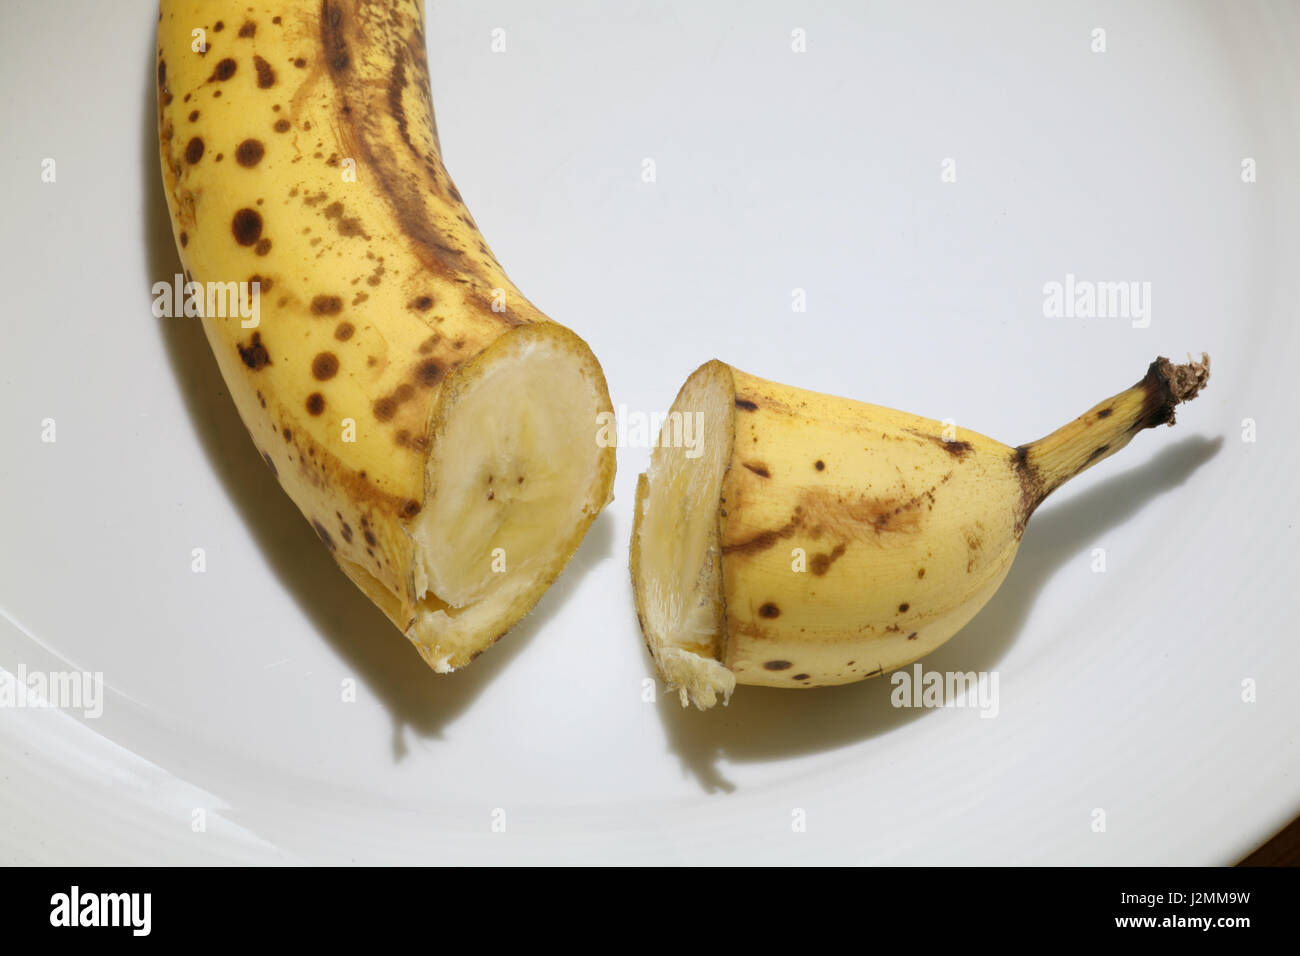 overripe banana Stock Photo